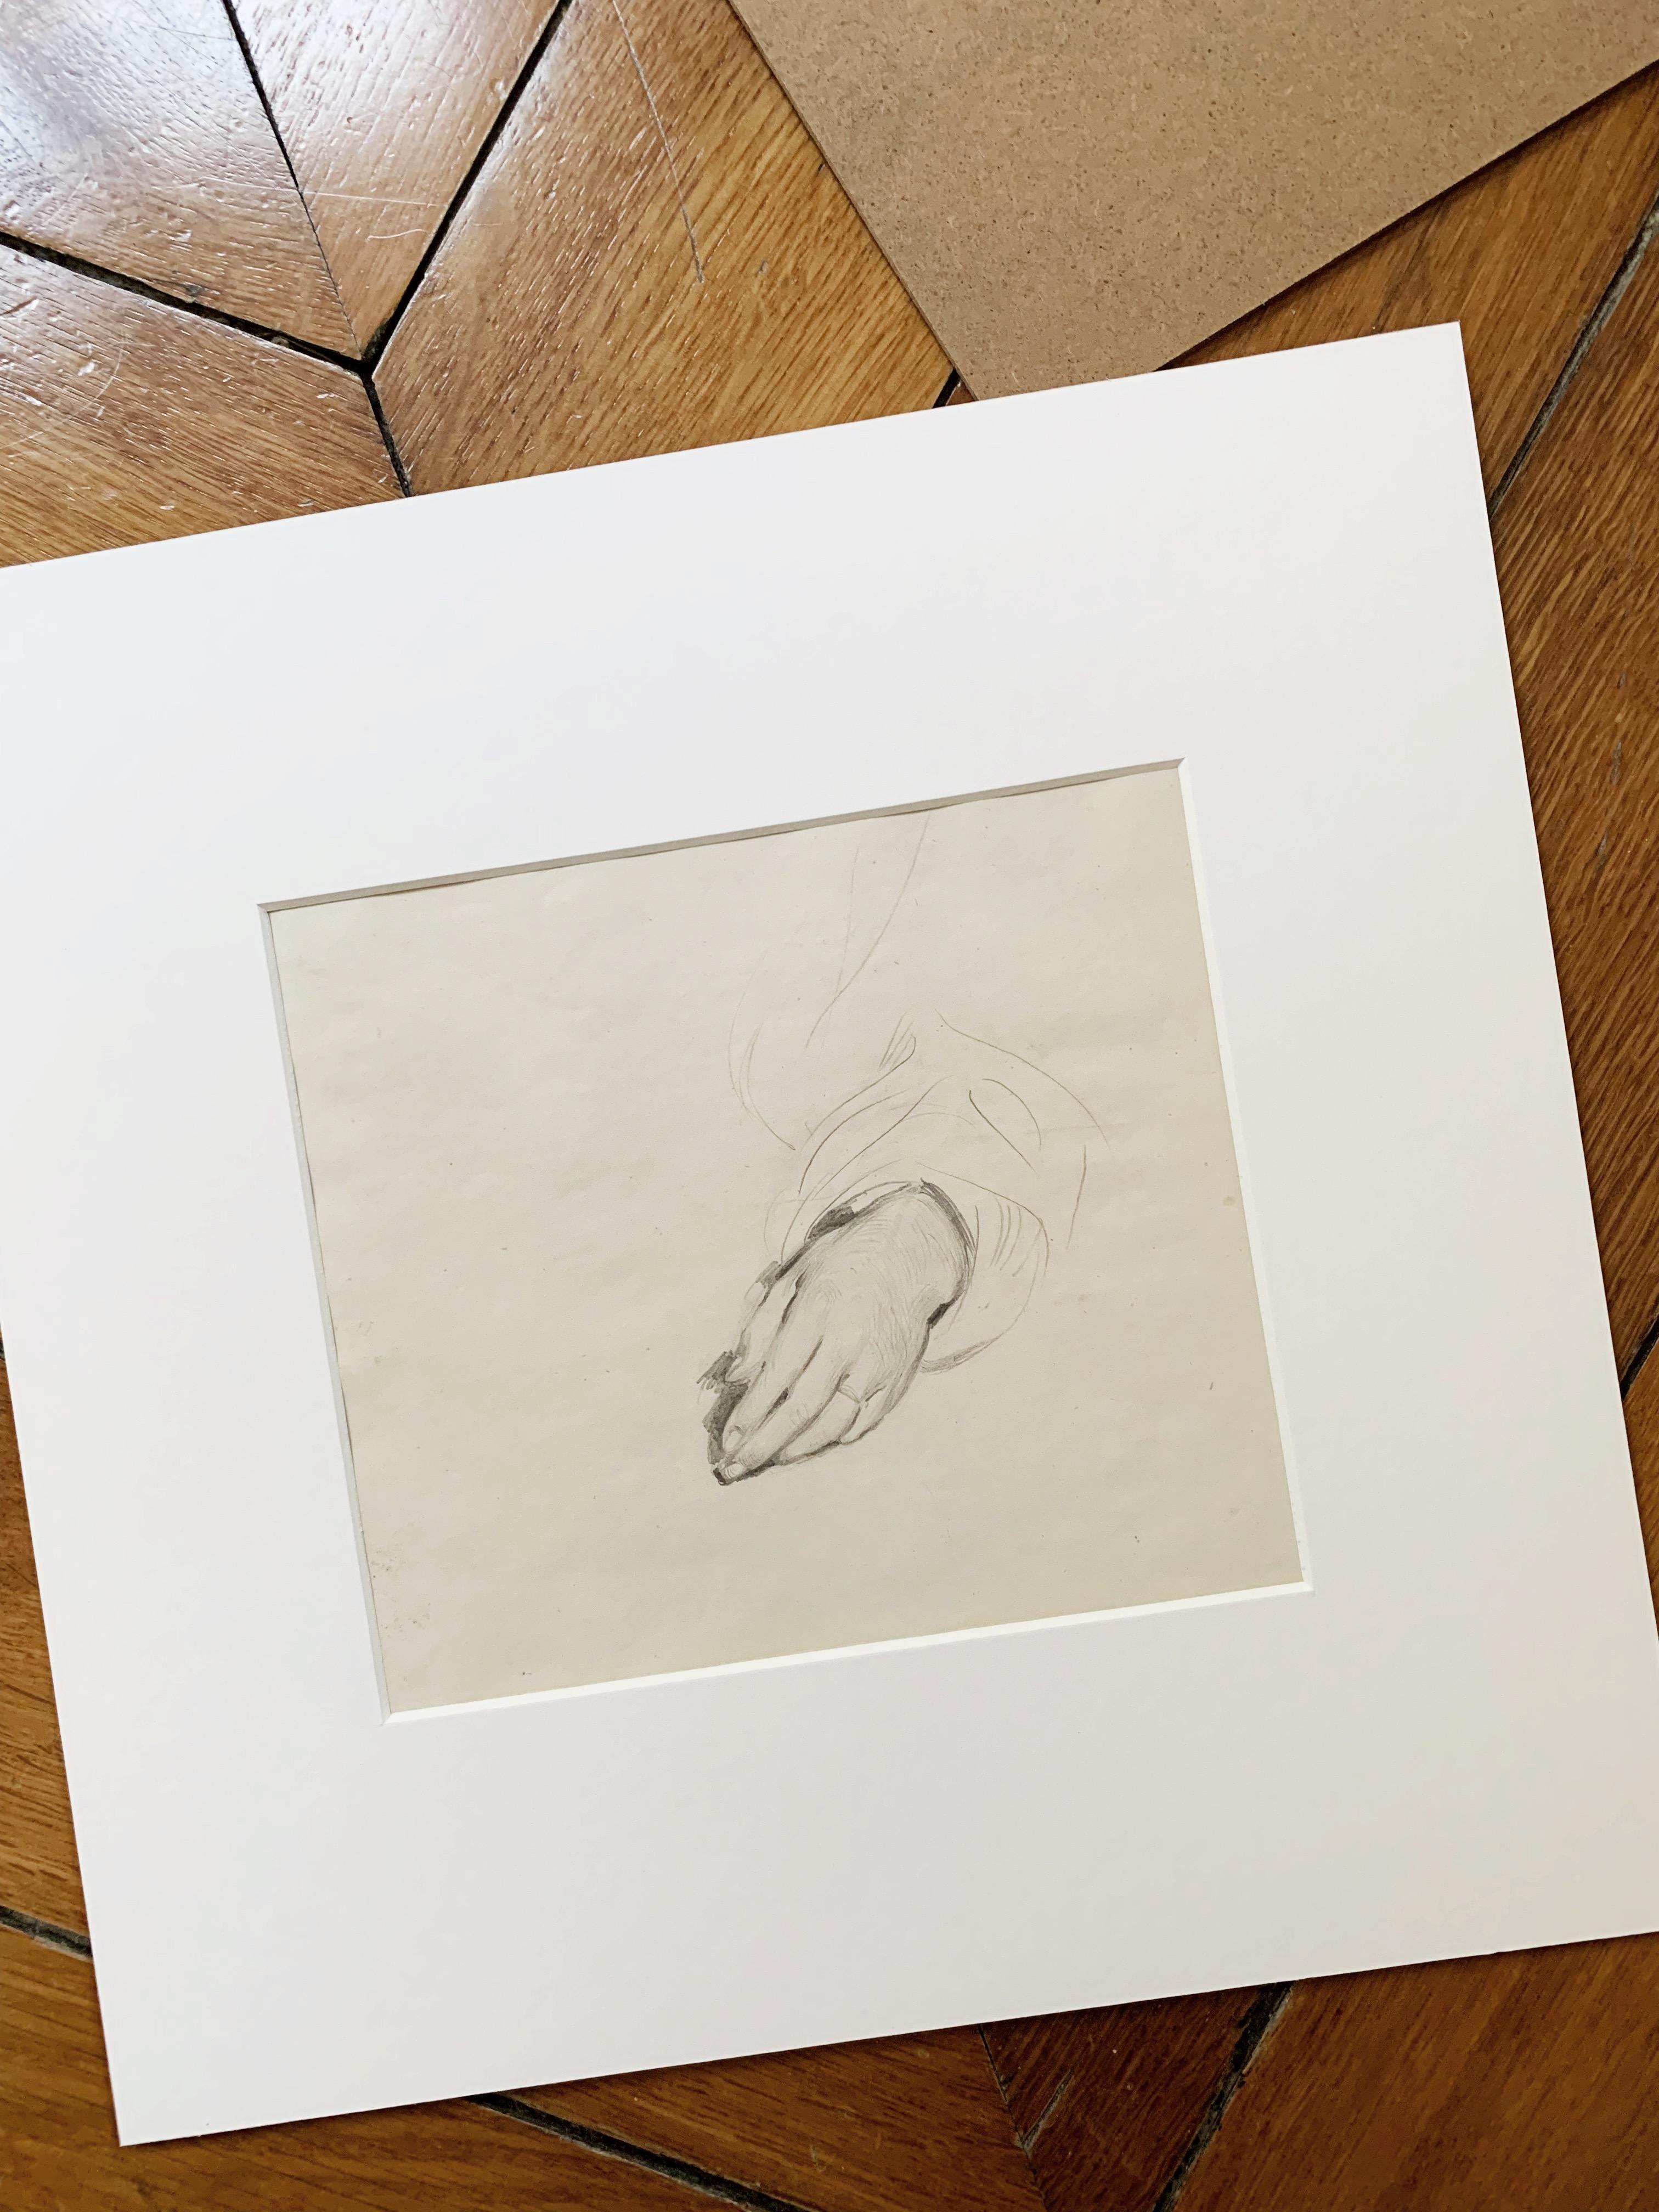 Alfred DEHODENCQ (1822-1982)
Étude d'une main ; préparatoire au tableau Mariée juive au Maroc, 1867
Crayon sur papier
Dimensions de l'œuvre : 15,5 x 17,5 cm
Taille du cadre : 30 x 30 cm


Alfred Dehodencq, peintre orientaliste, commence ses cours à